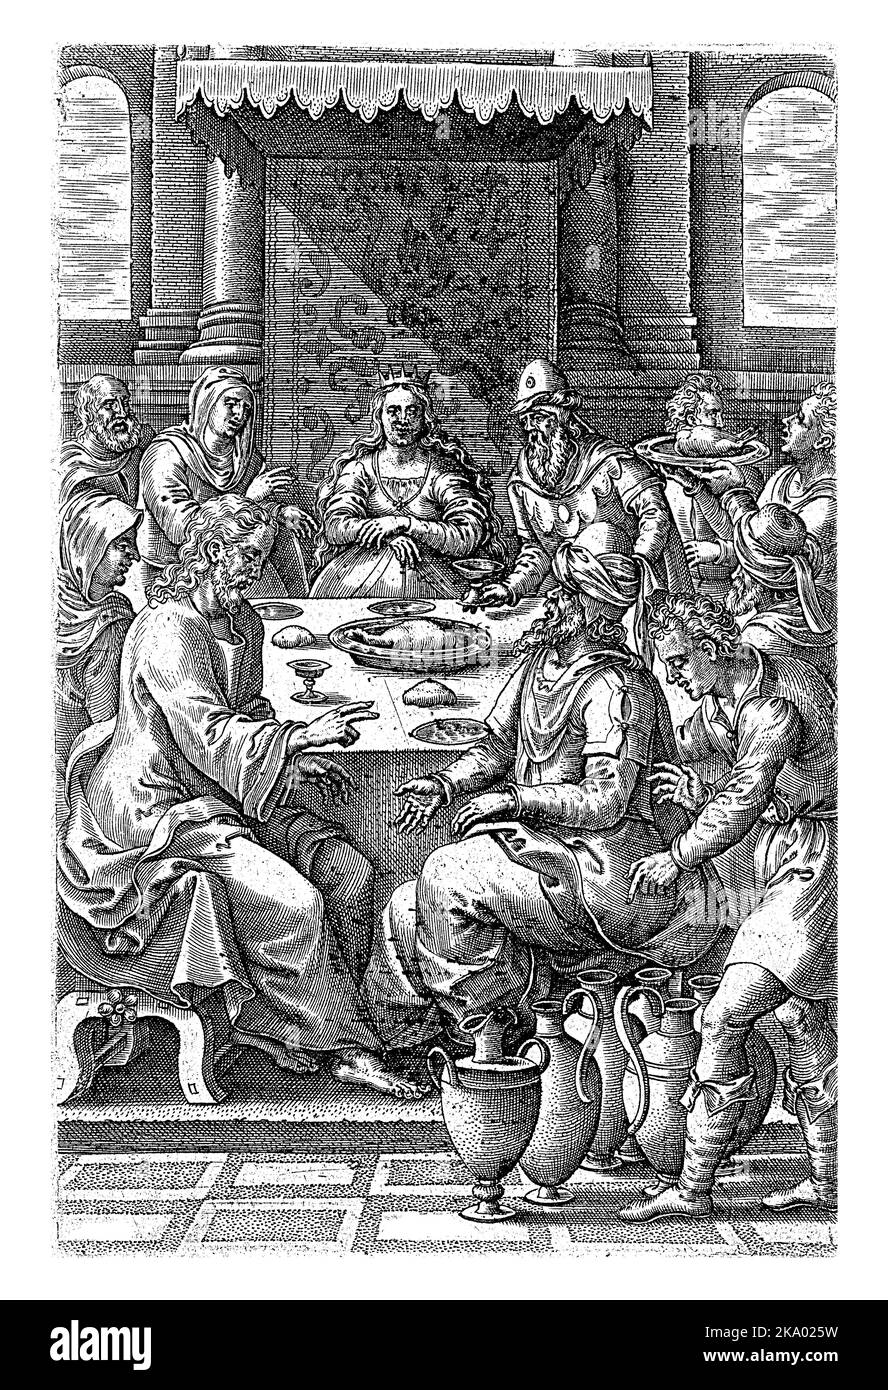 Mariage à Cana, Johannes Wierix, après Pieter van der Borcht, 1571 le couple de la mariée et les invités s'assoient autour d'une table. Christ bénit les cuves de vin Banque D'Images